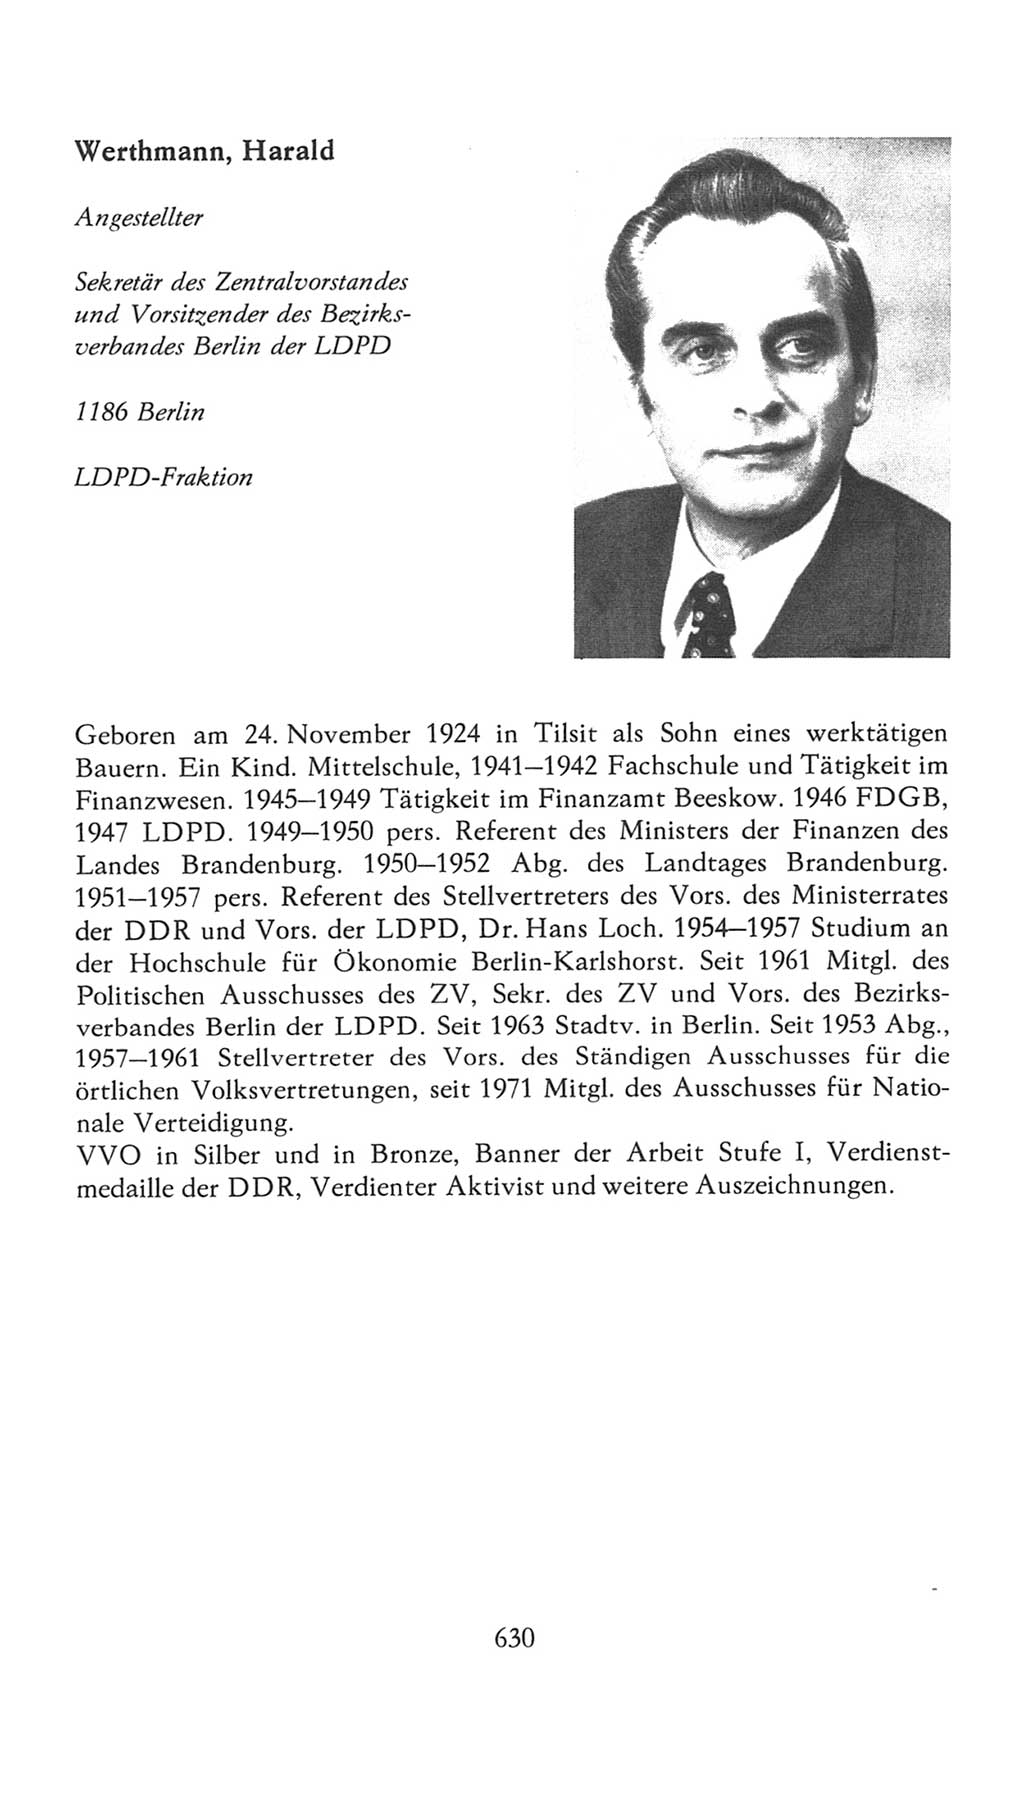 Volkskammer (VK) der Deutschen Demokratischen Republik (DDR), 7. Wahlperiode 1976-1981, Seite 630 (VK. DDR 7. WP. 1976-1981, S. 630)